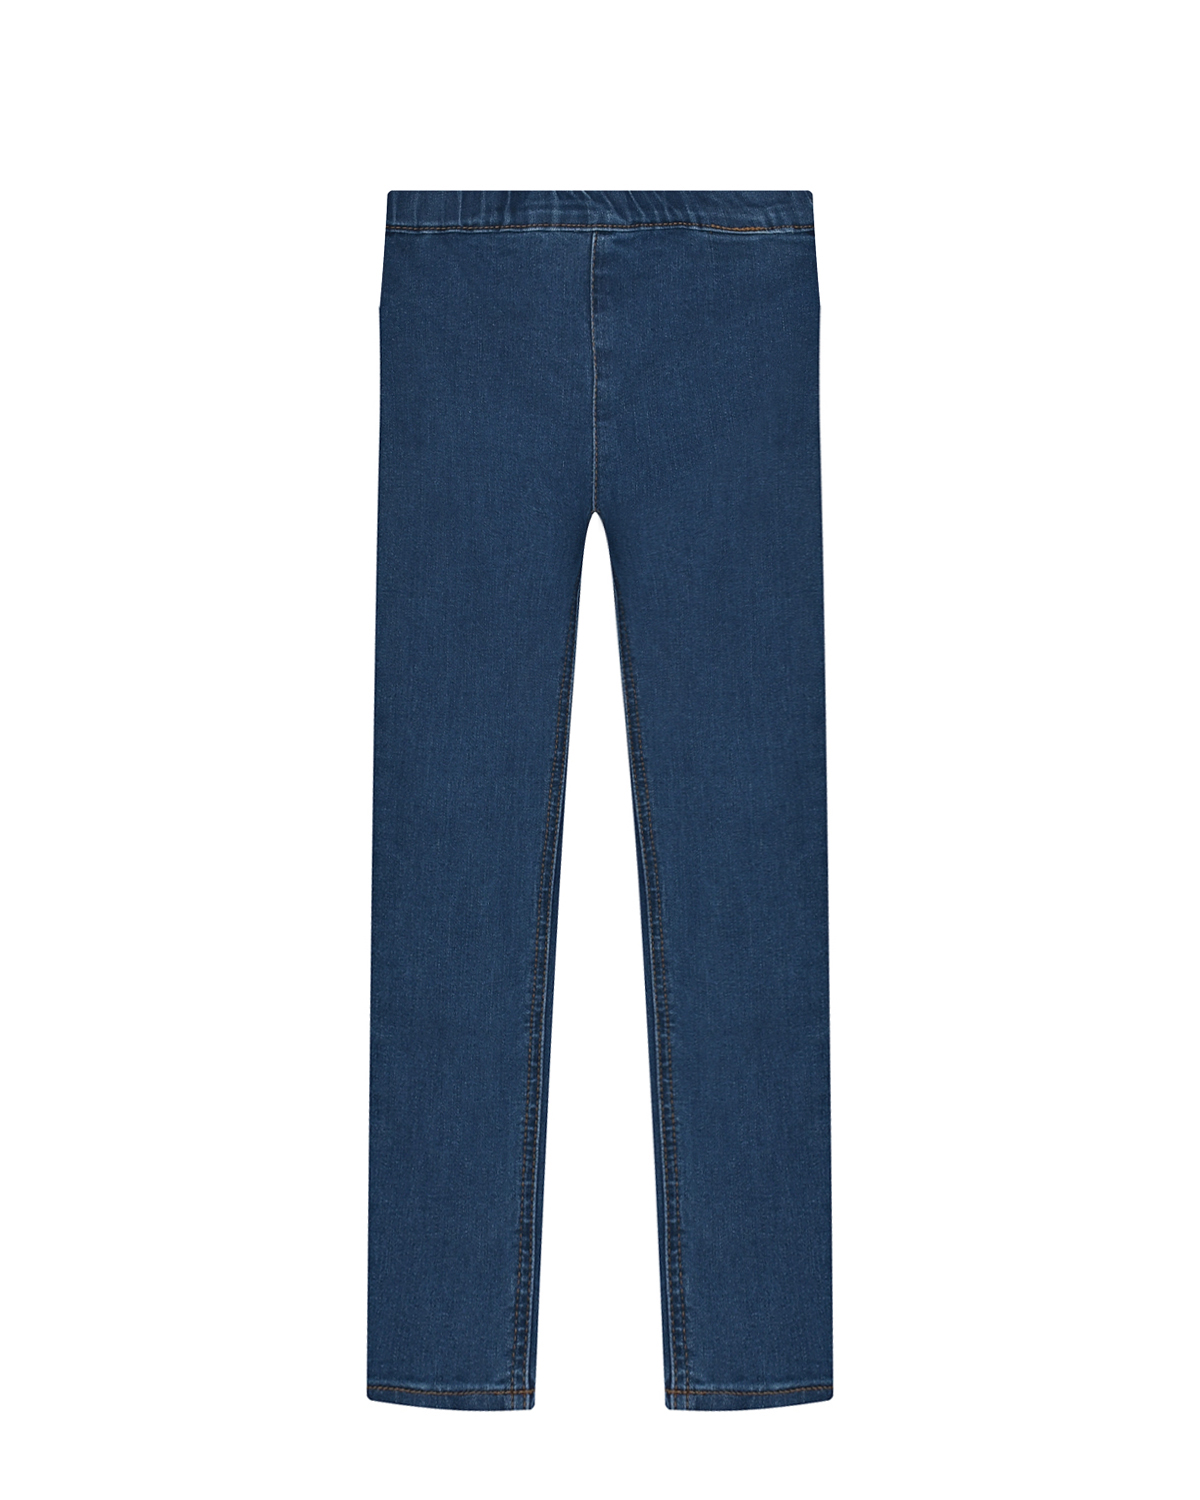 Джинсовые брюки стрейч Molo детские, размер 104, цвет синий - фото 1